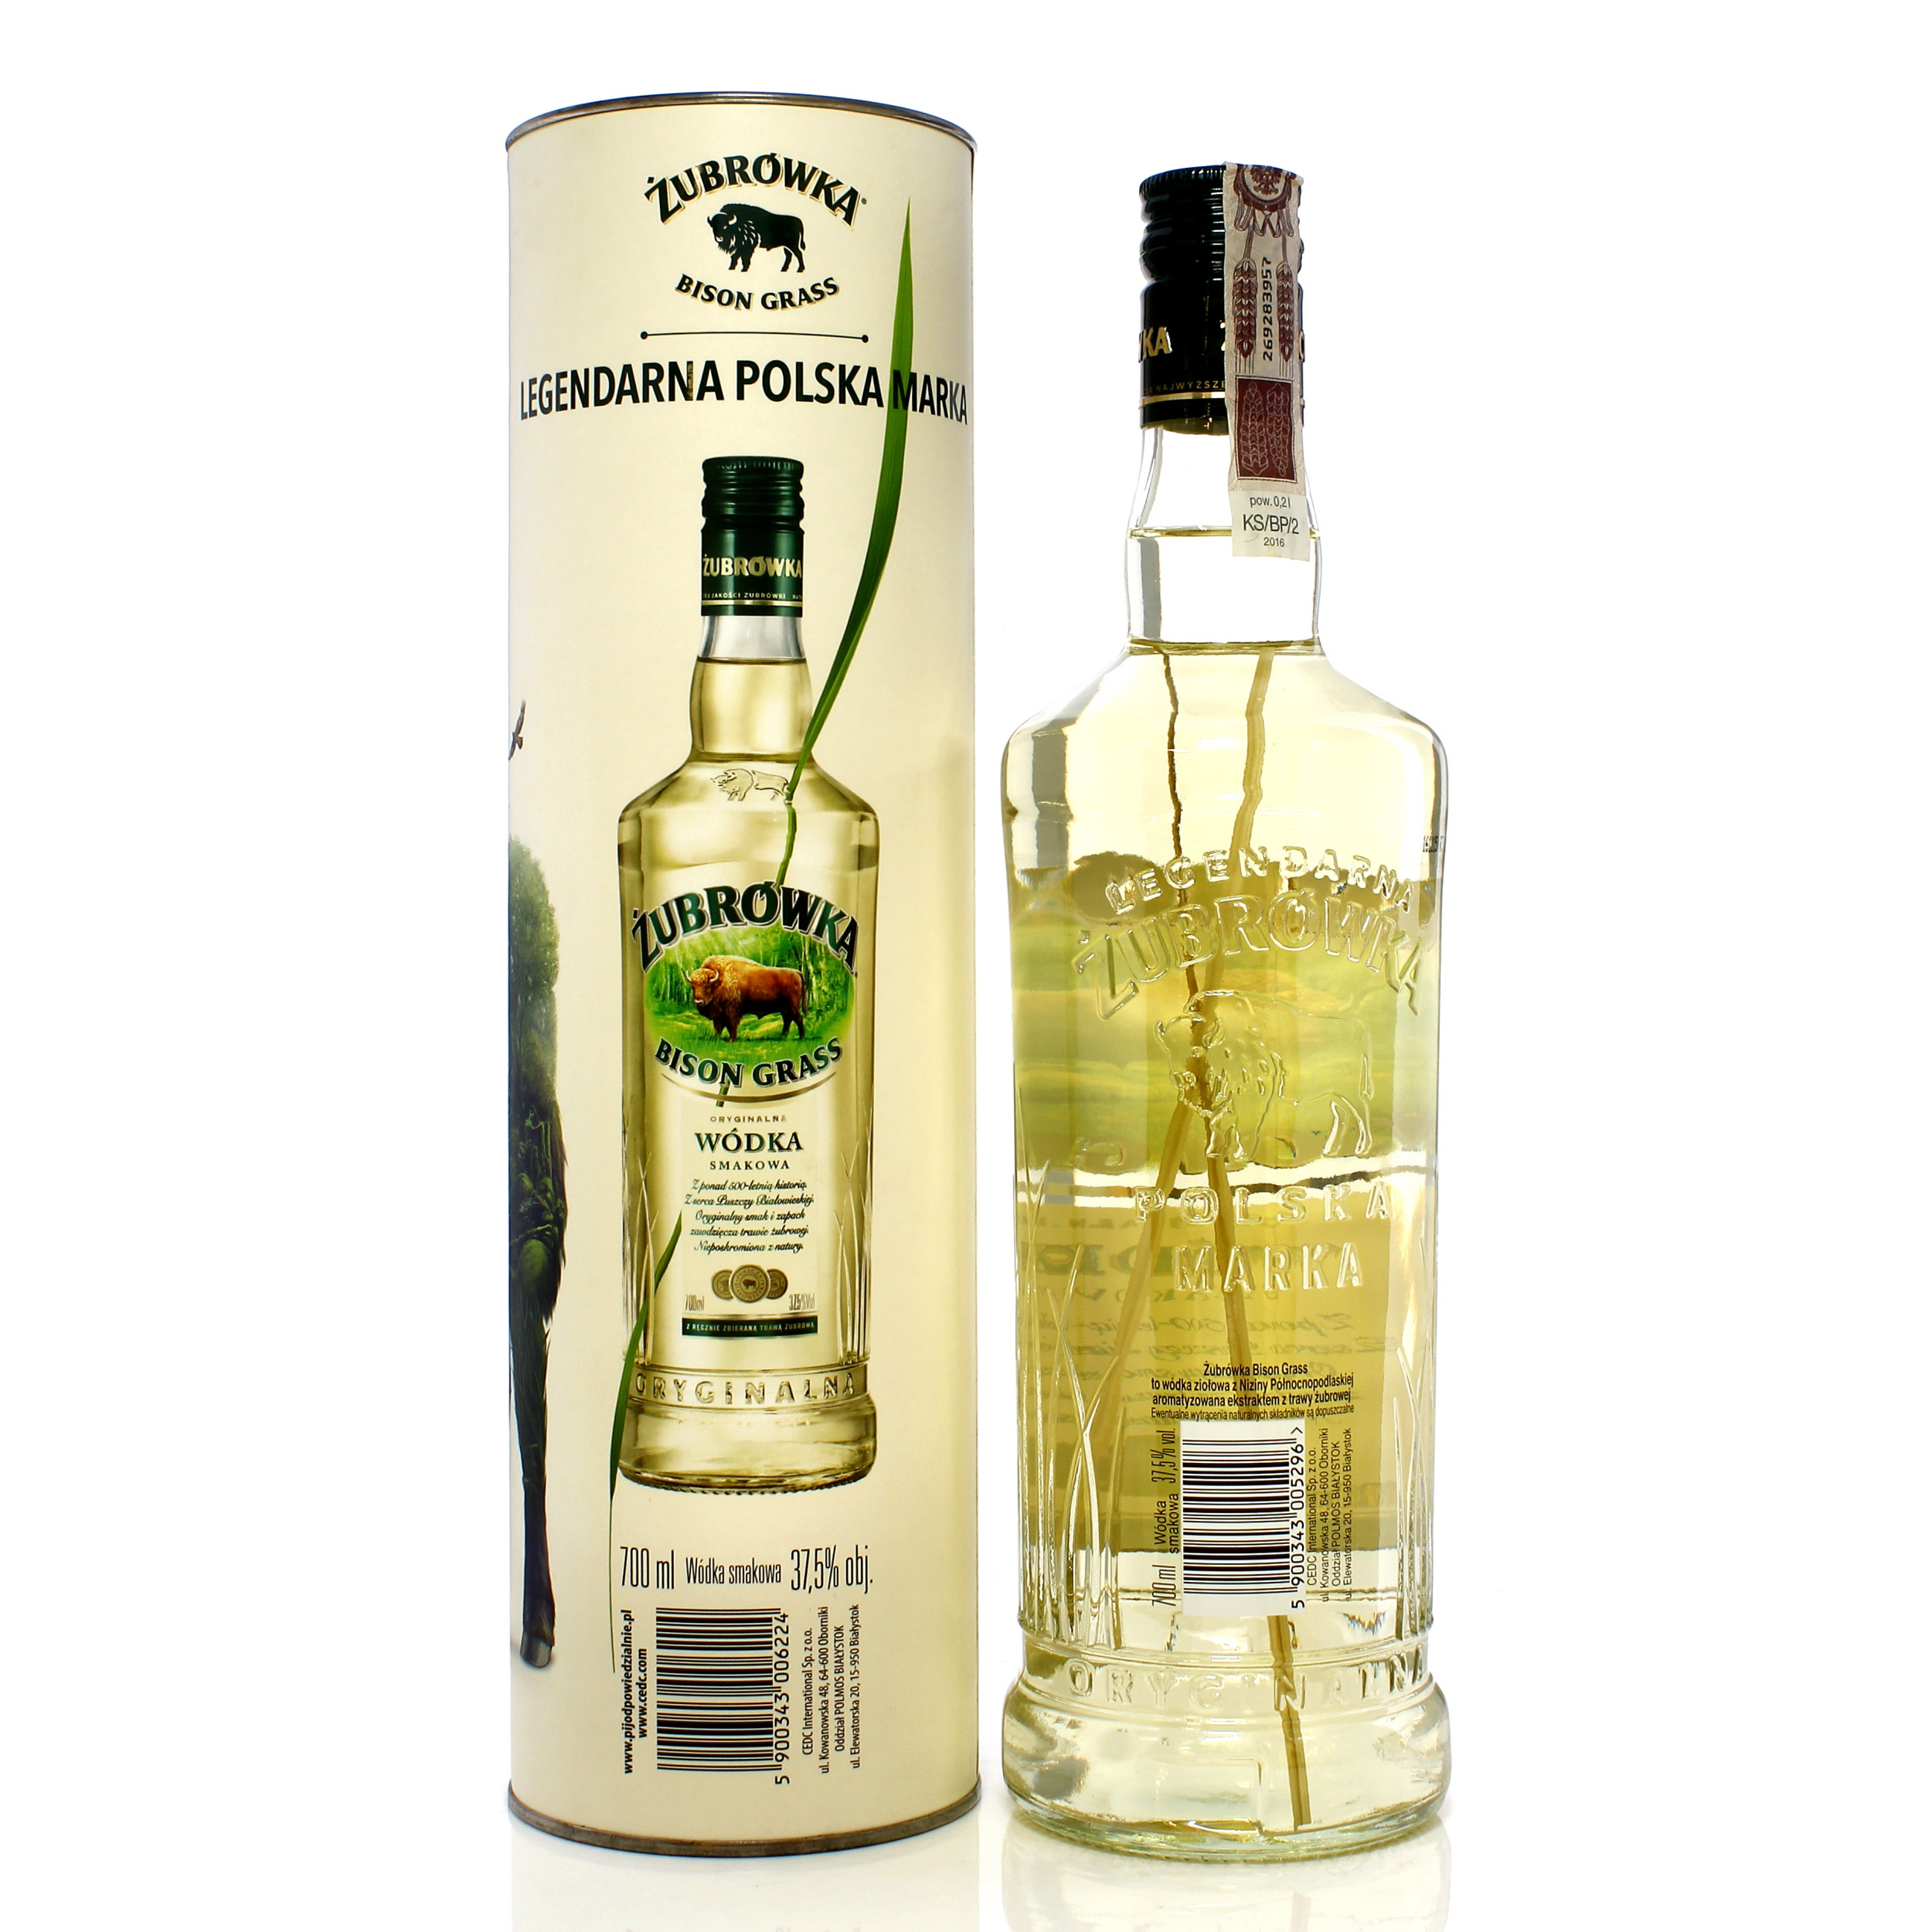 Zubrowka Bison Grass Vodka Auction A32979 | The Whisky Shop Auctions